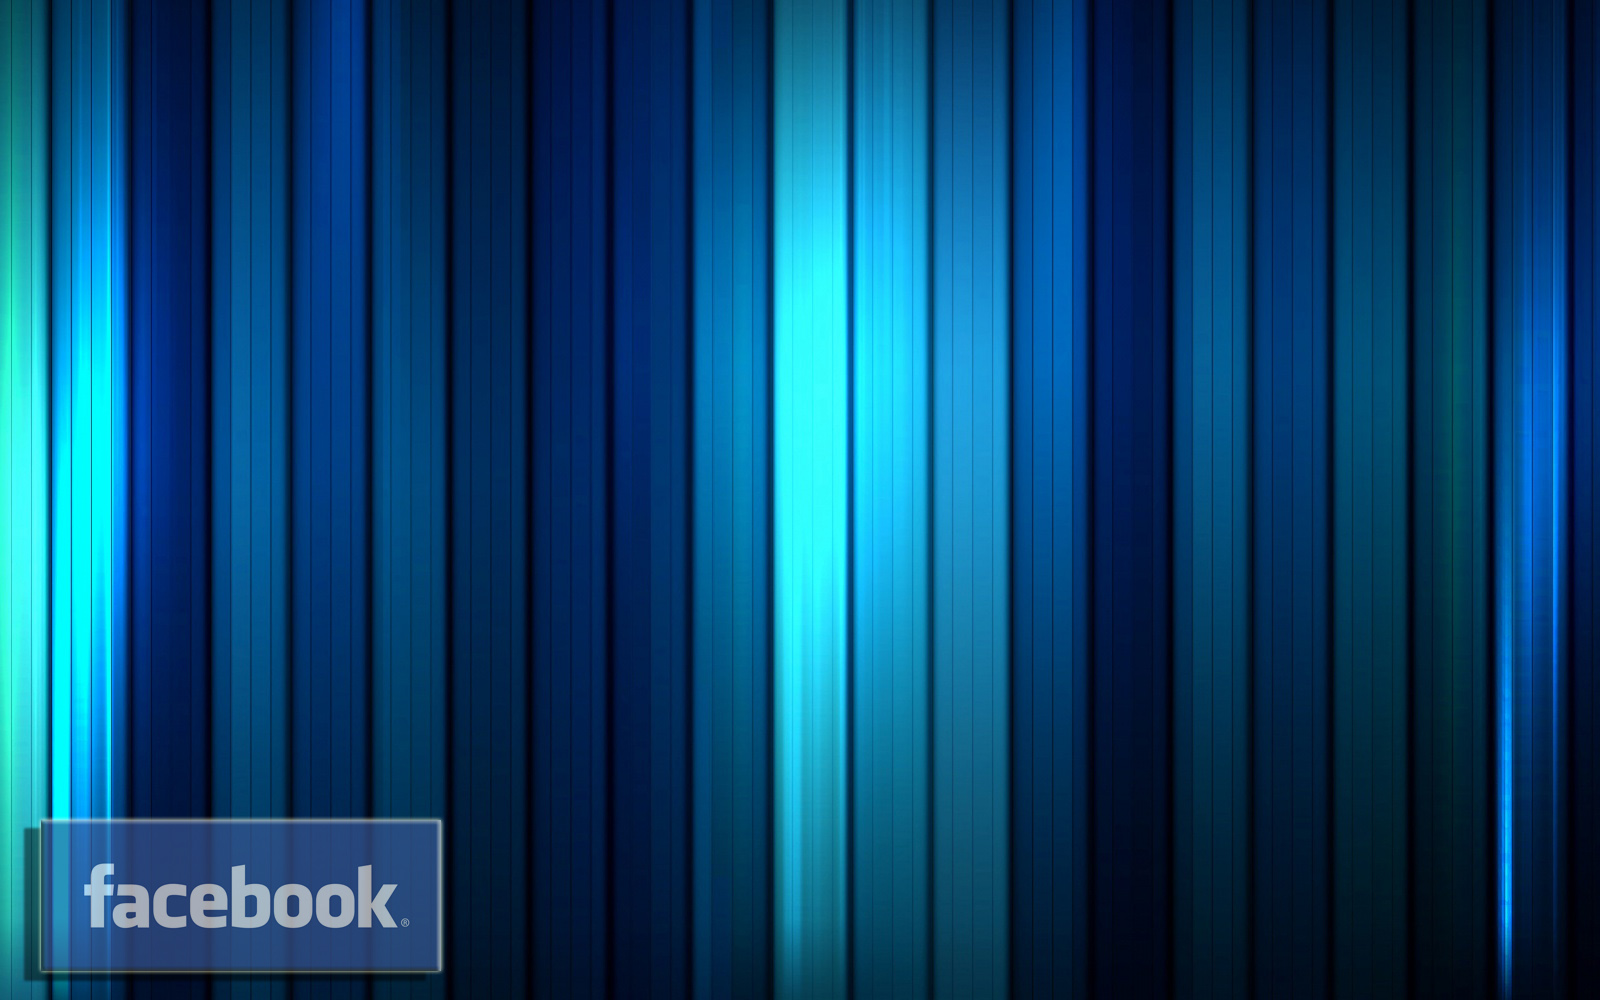 facebook fondos de pantalla hd,azul,azul cobalto,azul eléctrico,turquesa,agua